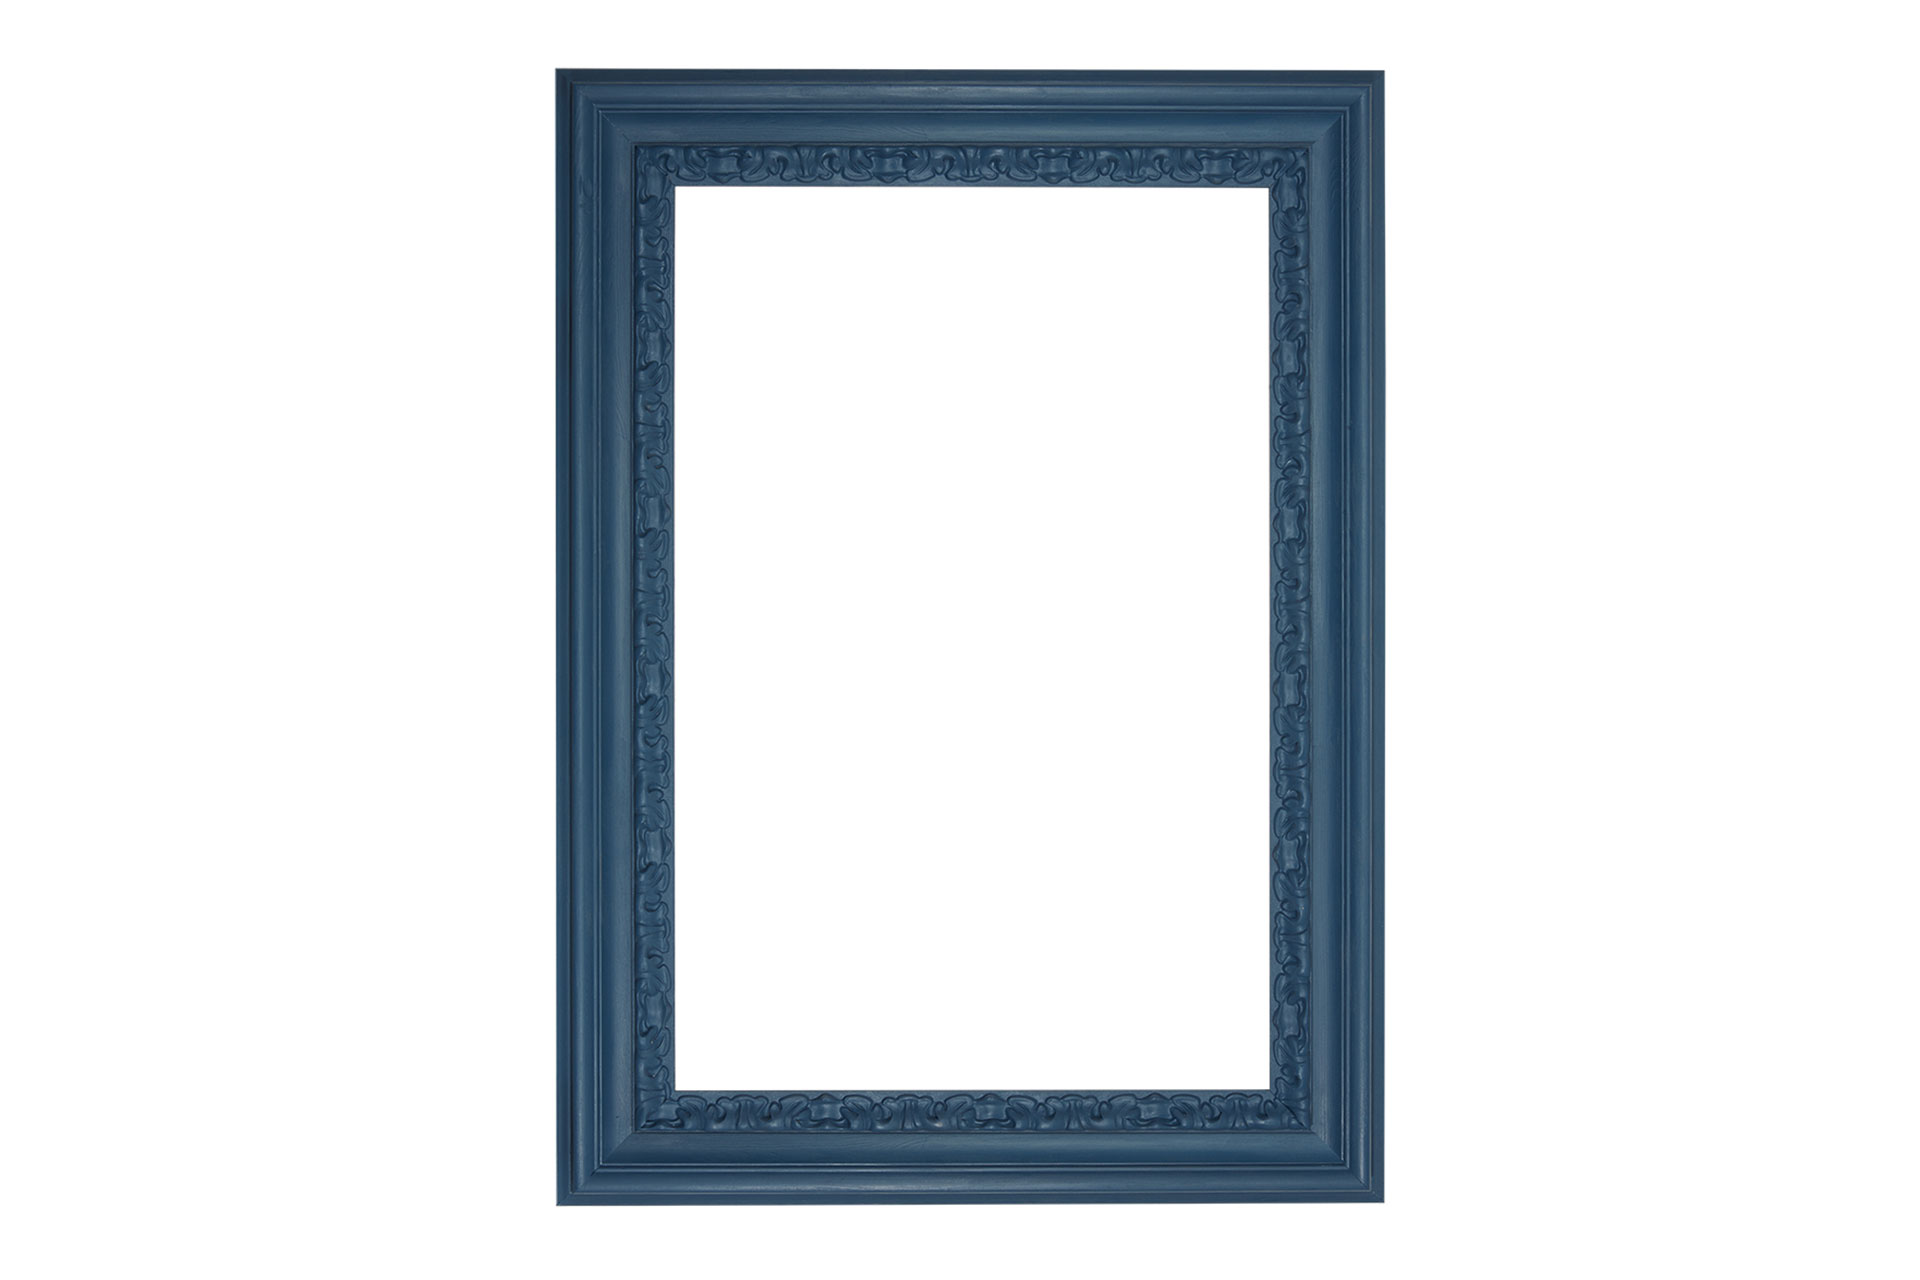 Wandspiegel Modell Landshut, Design/Farbe: Blue, Spiegel, Form: rechteckig, Material: Holz, Raum: Innenbereich, Style: modern, Herstellung: by ASR-Rahmendesign, Produktkategorie: Vintage, Ansicht Front